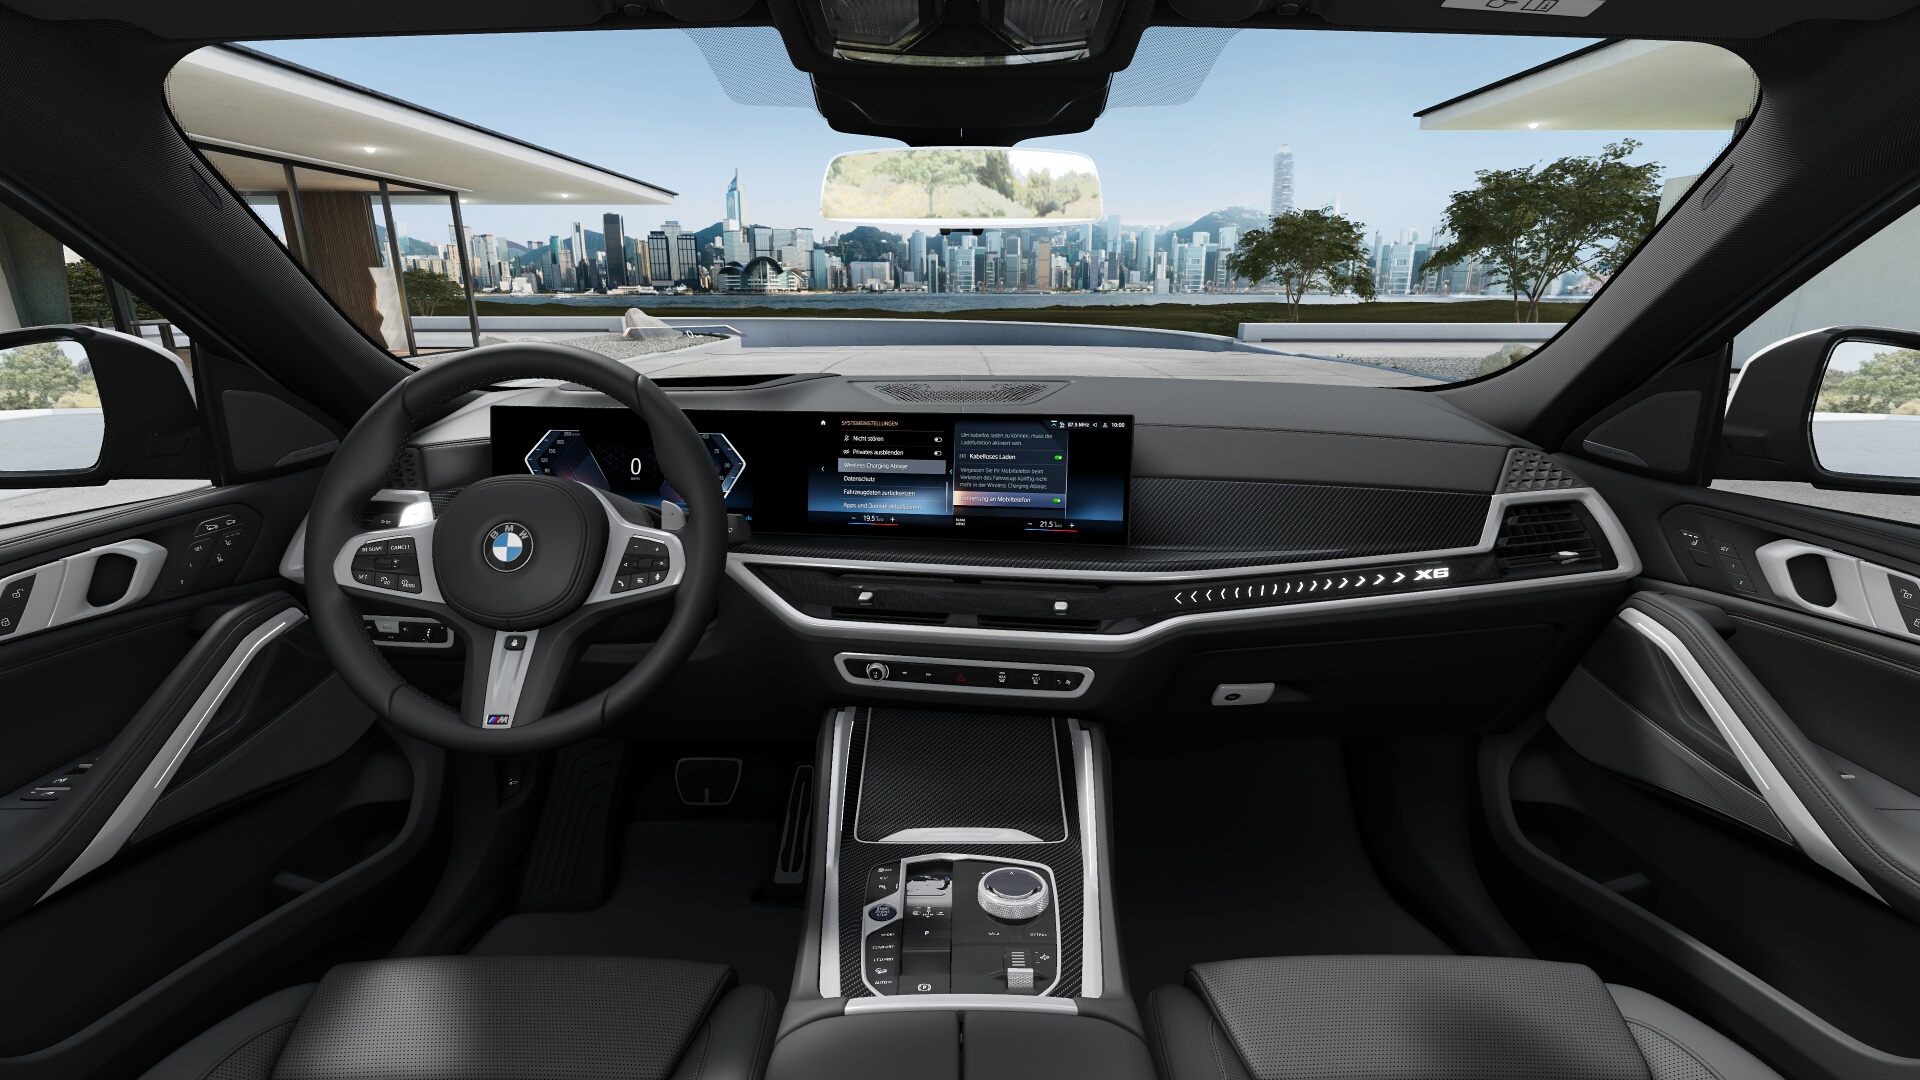 BMW X6 40d xDrive Msport | FACELIFT | NOVÉ AUTO SKLADEM | sportovní naftové SUV coupé | nejsilnější nafta 350 koní | nejmodernější technologie | maximální výbava | nové auto skladem | ihned k předání | více info a nákup online na AUTOiBUY.com